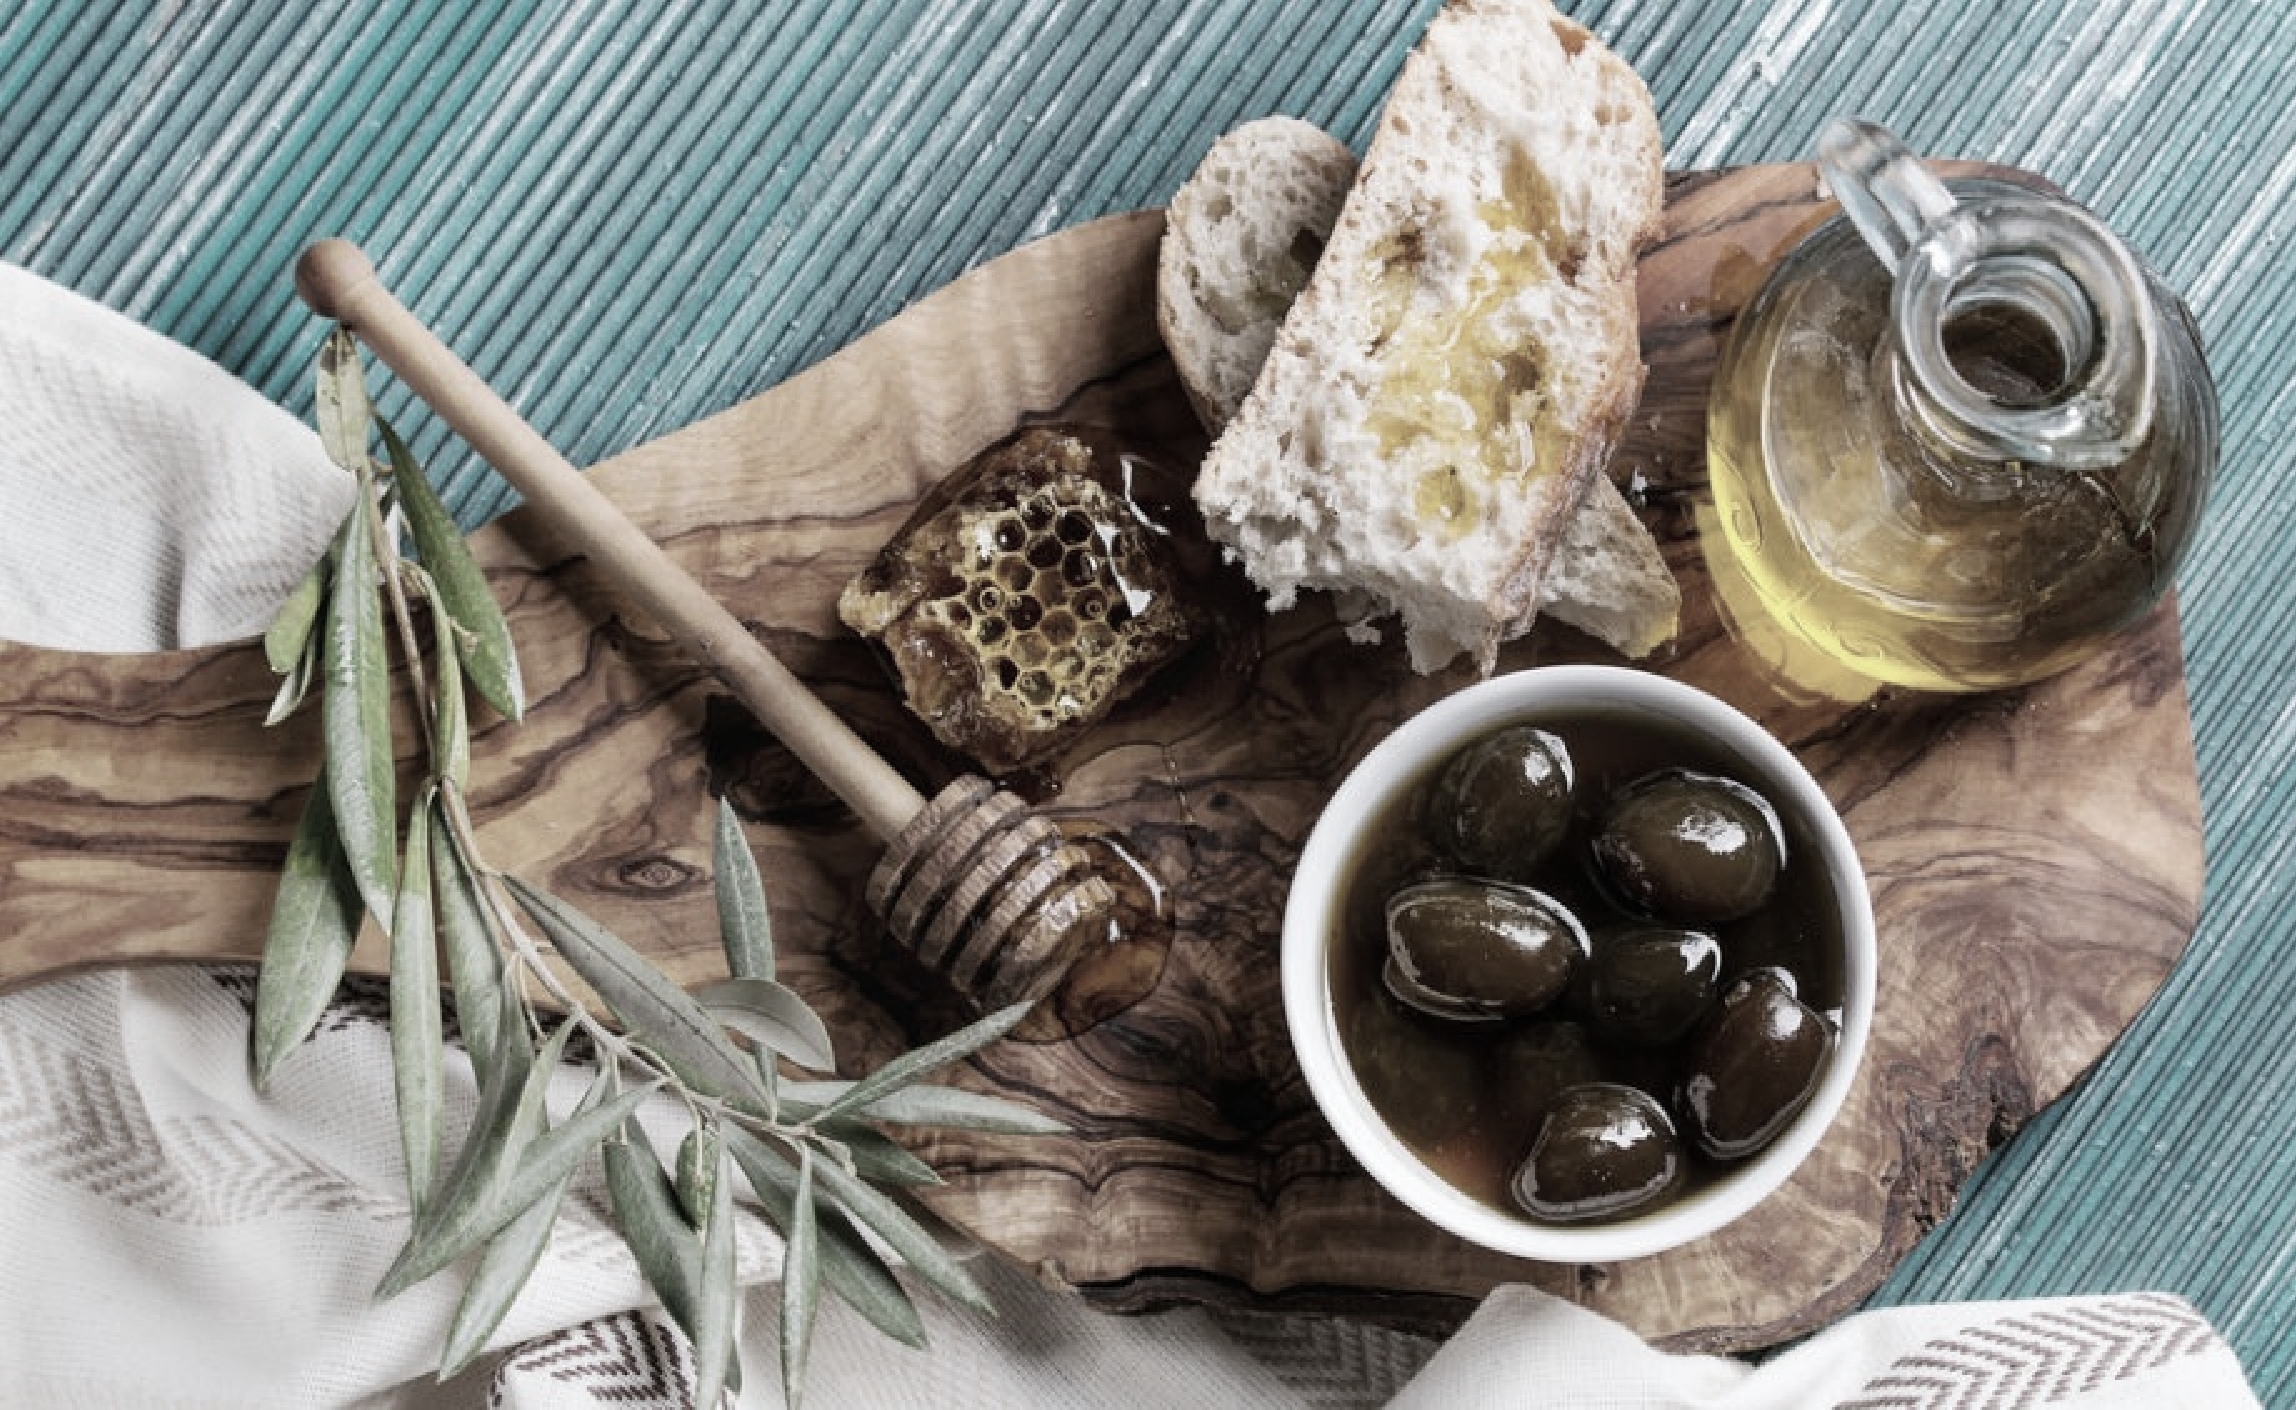 feigen olivenölseife festes shampoo handgemachte aufstriche griechisches olivenöl thymianhonig pinienhonig keramik spiro ceramics naturkosmetik mokka griechischer mokka tee kräuter